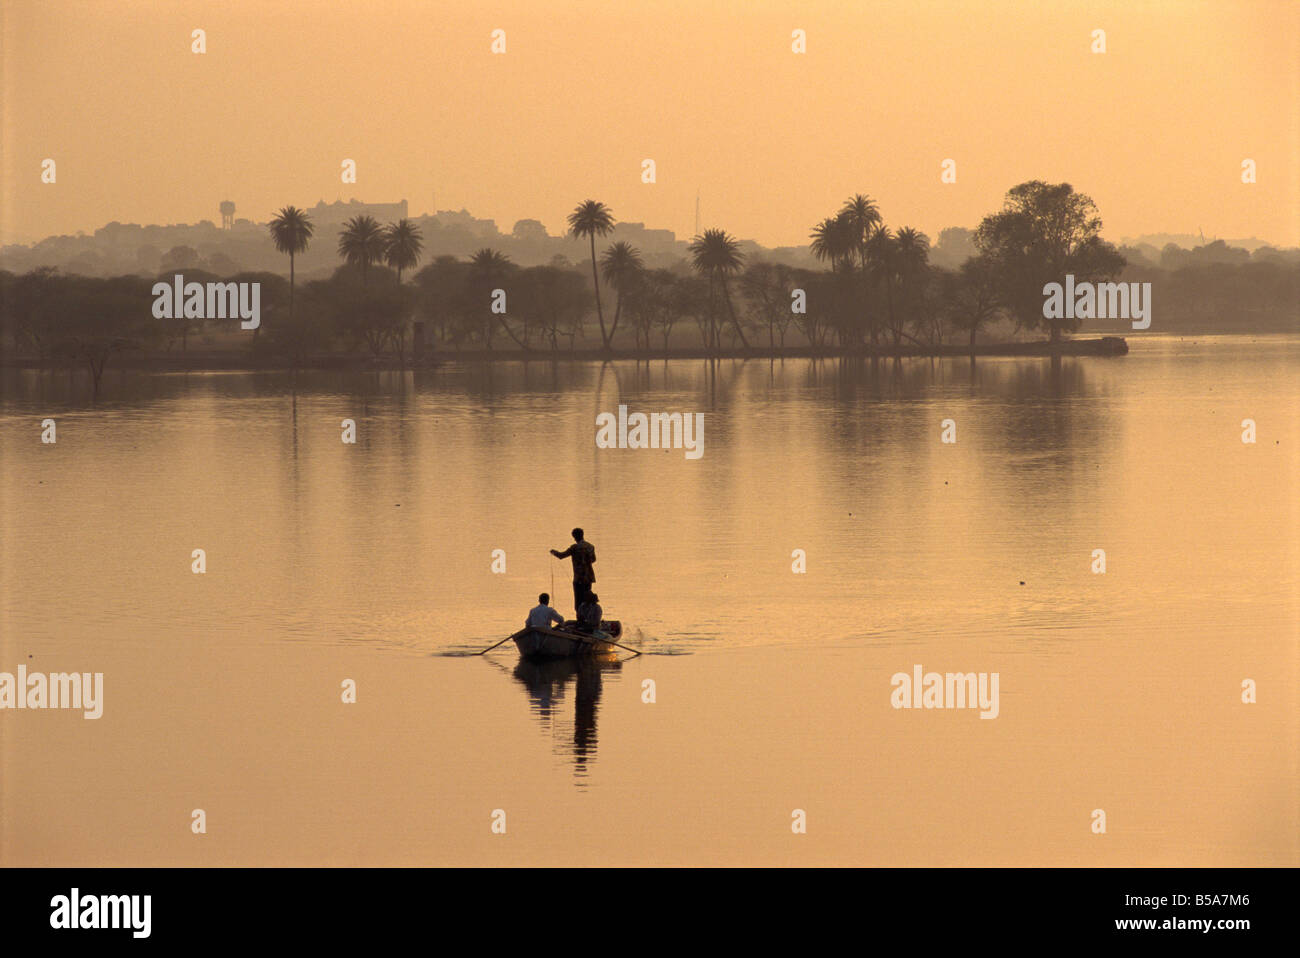 Männer Angeln im See erstellt von dam Deogarh Rajasthan Staat Indien Asien Stockfoto